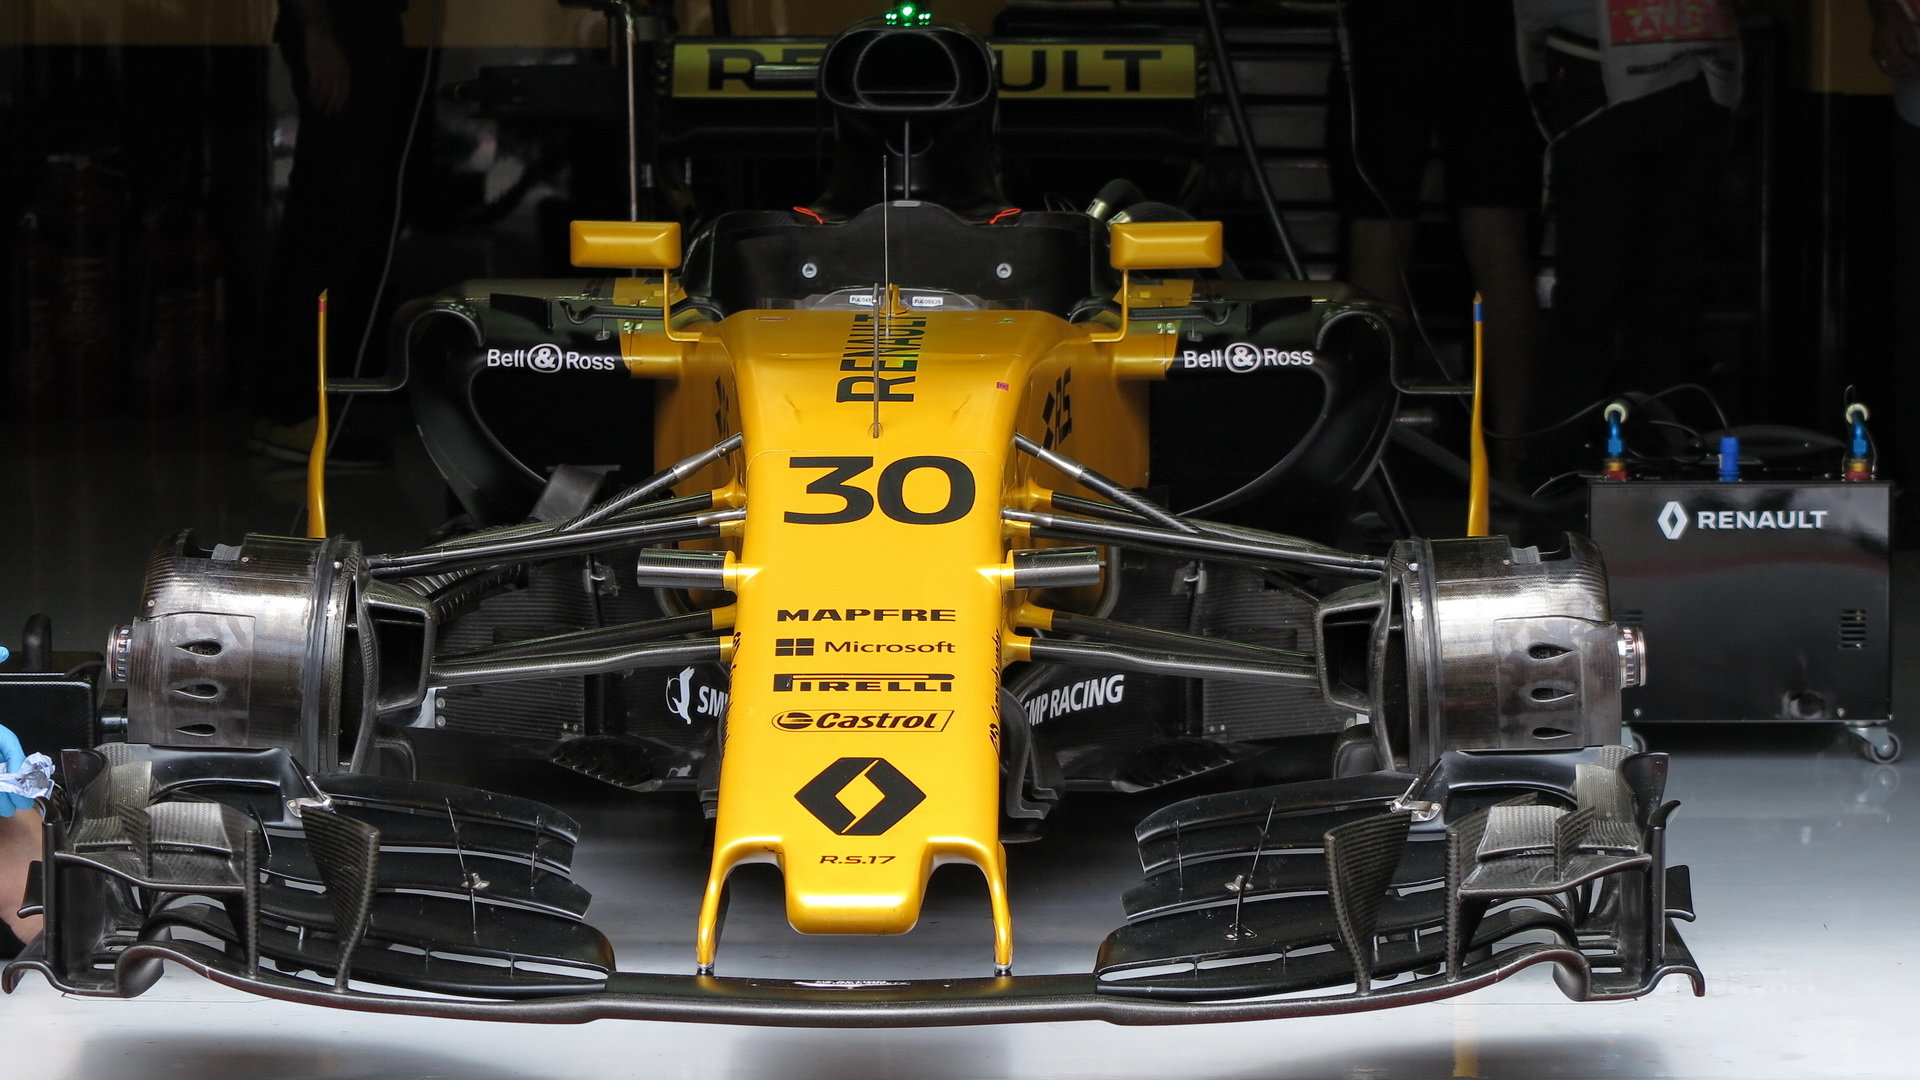 Haas je pro Renault hrozbou, proto zvažuje, zda do posledního závodu půjde agresivně, nebo opět zvolí opatrnější přístup a sníží výkon motorů